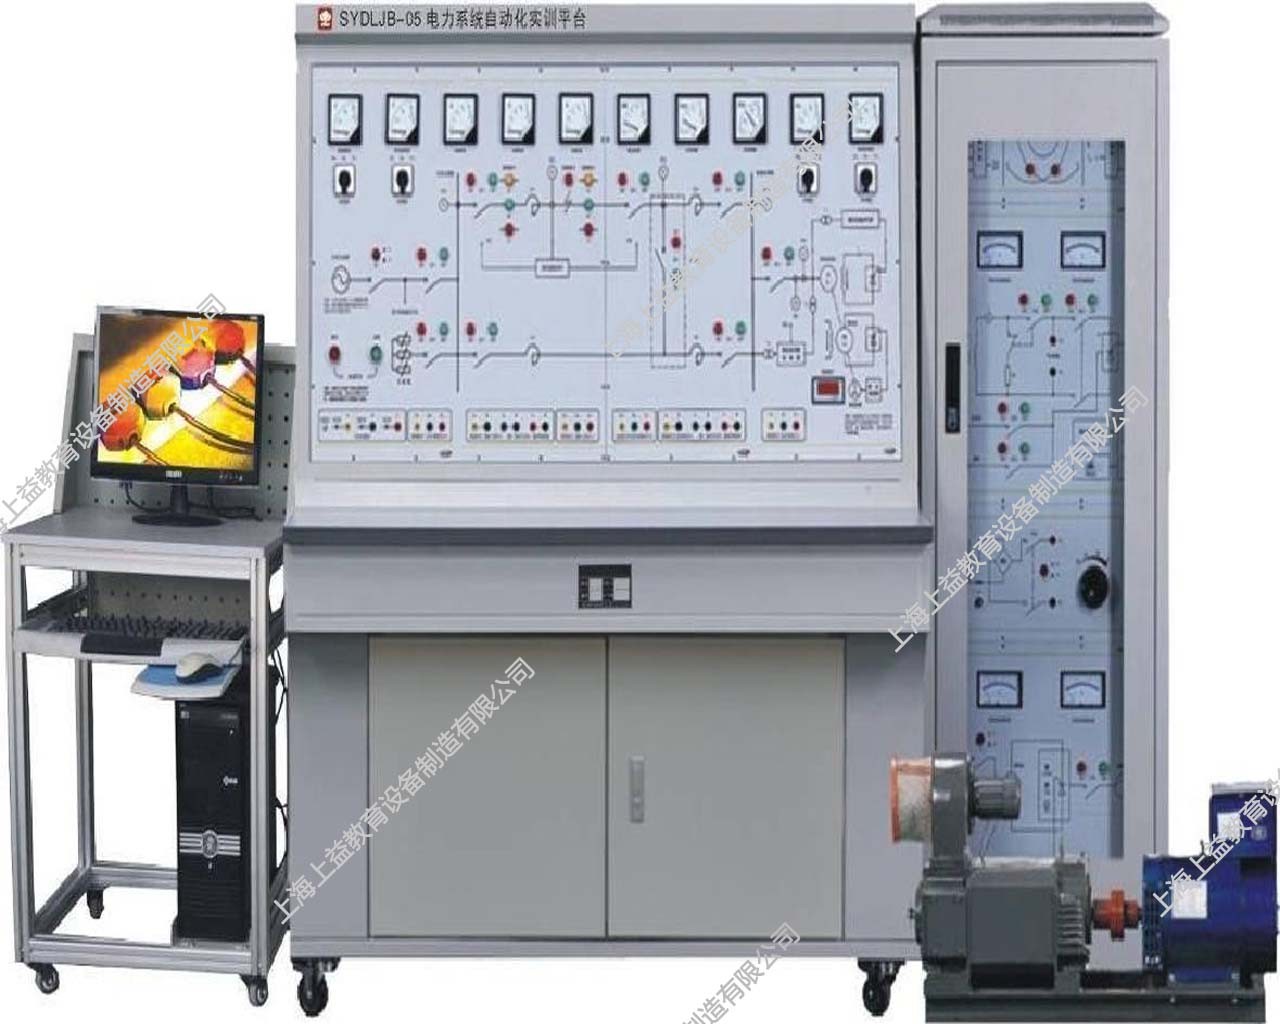 SYDLJB-05电力系统自动化实训平台